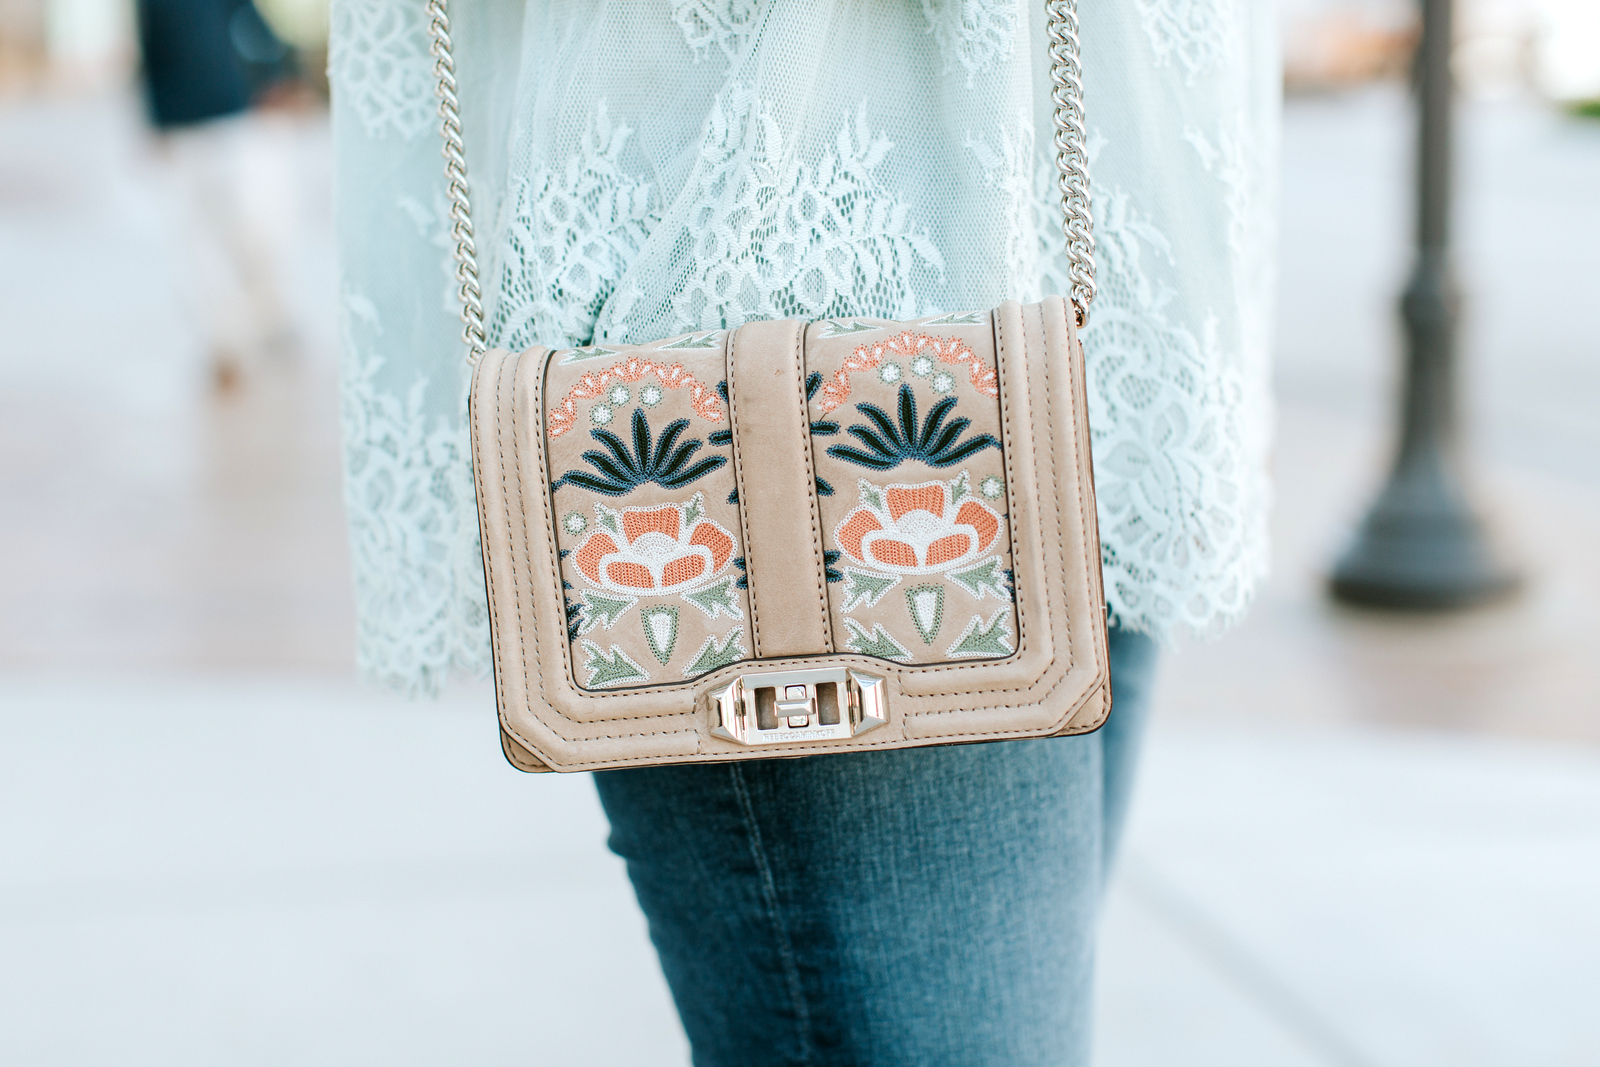 Pretty Mint Green Lace Top by Utah fashion blogger Sandy A La Mode